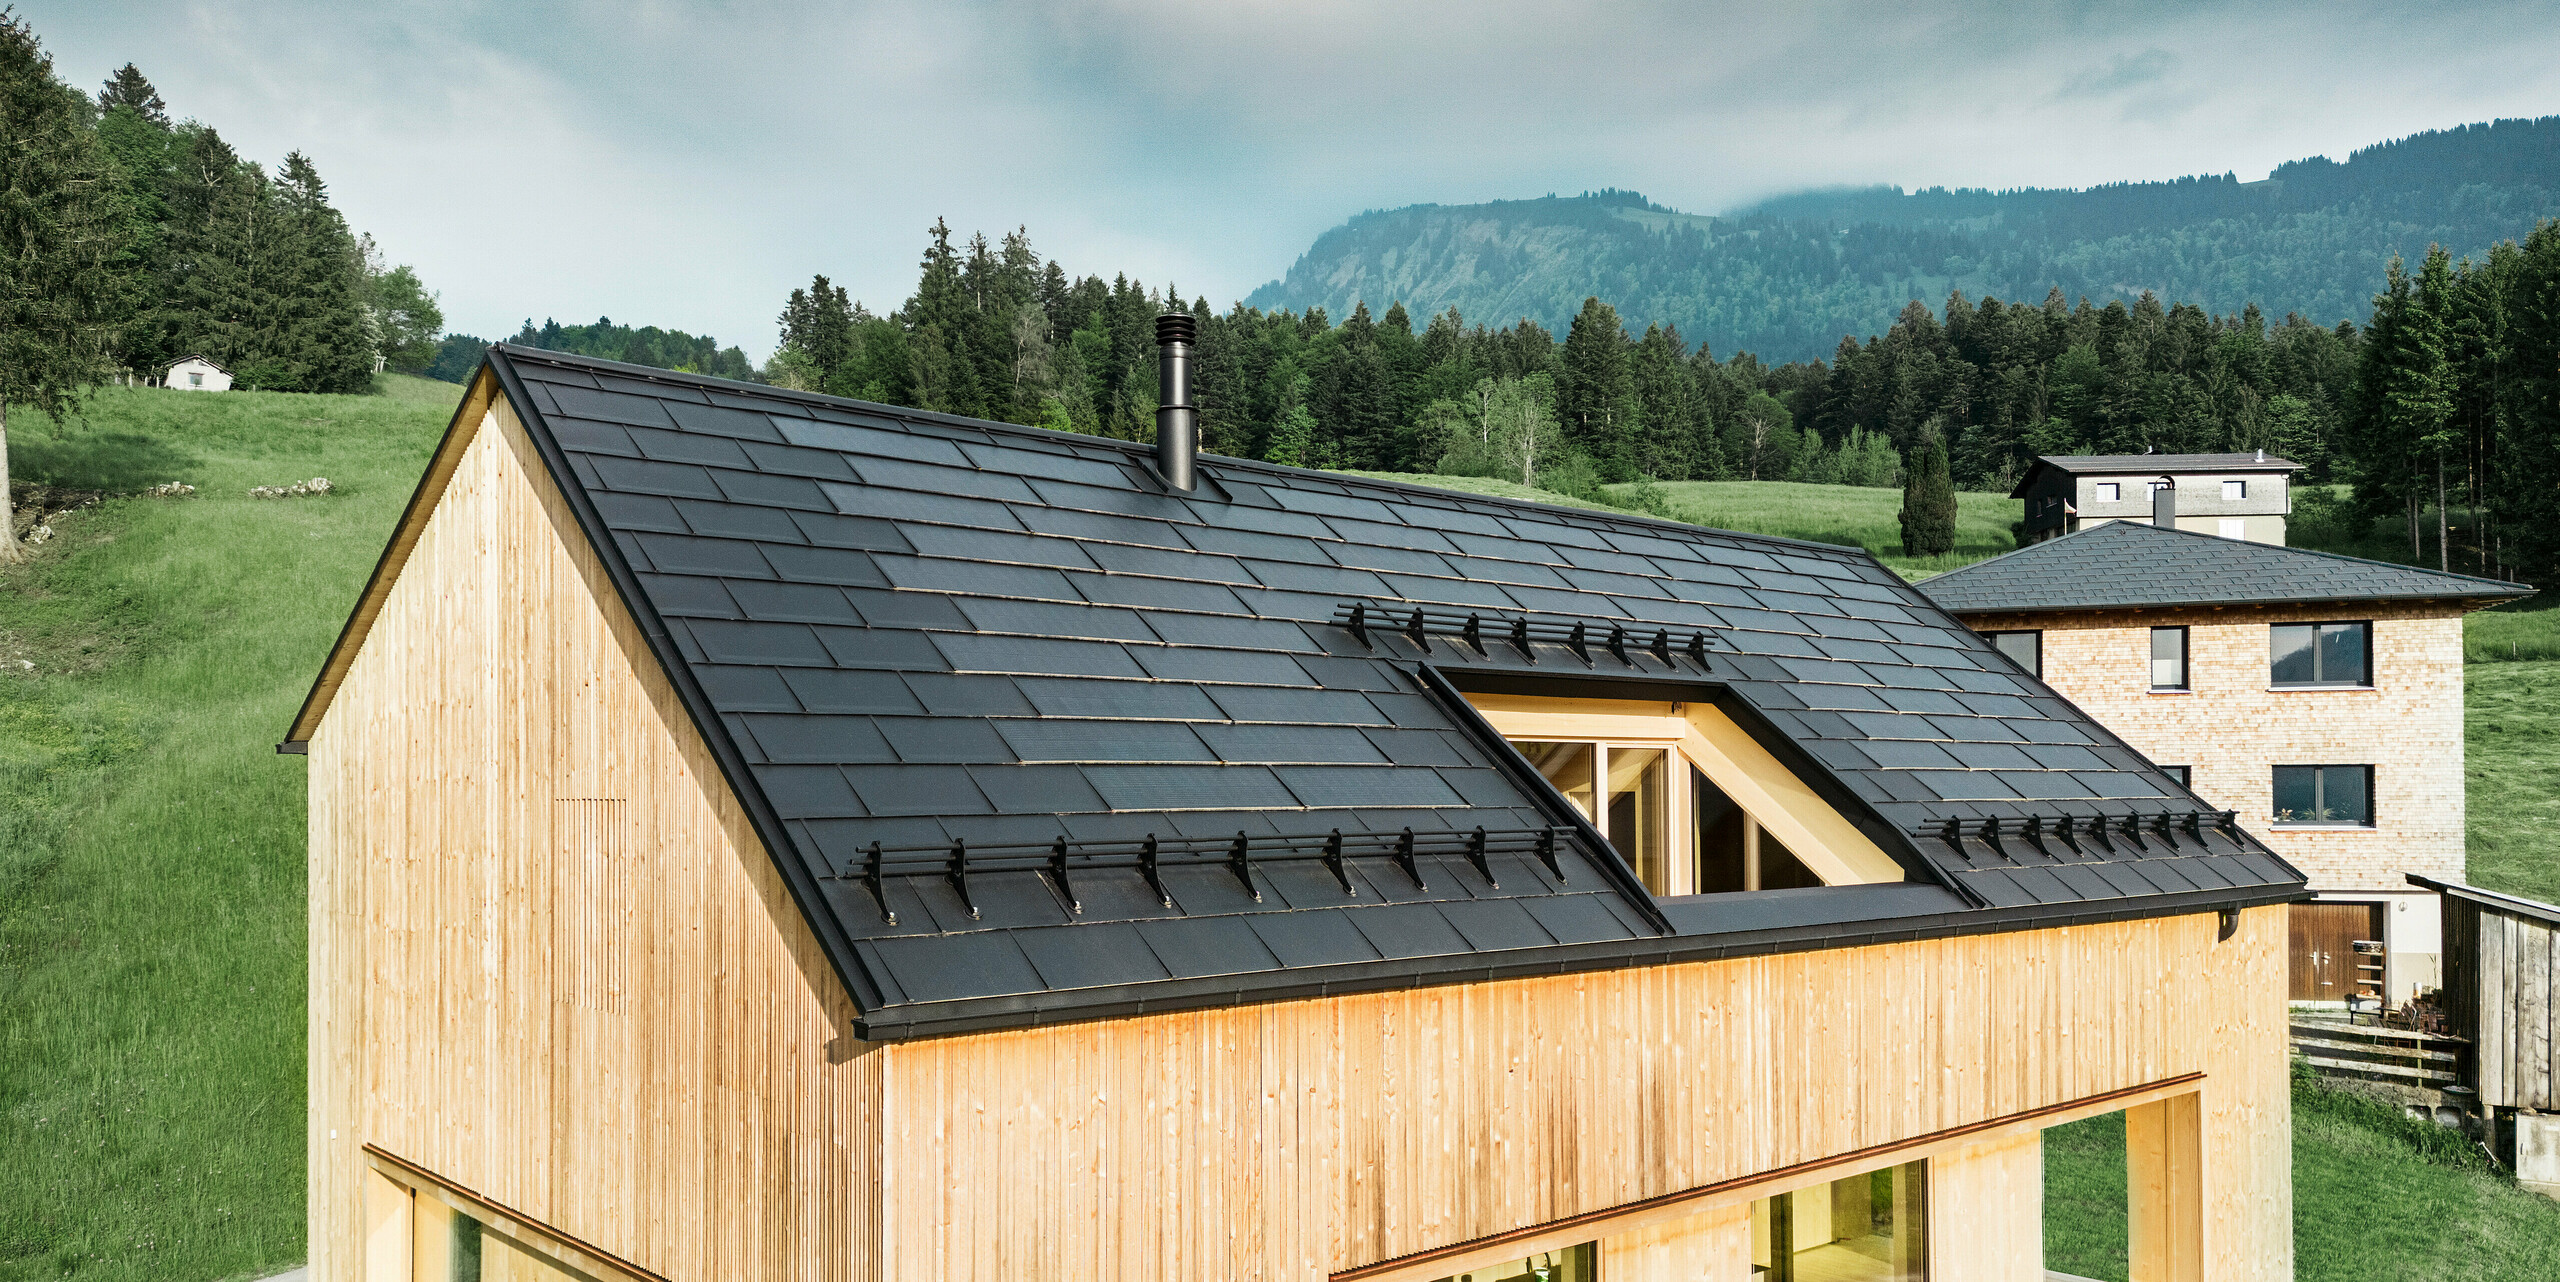 Vue de face d'une maison moderne en bois à Egg, qui se détache sur le paysage verdoyant et luxuriant avec son toit solaire PREFA sombre. Les tuiles solaires noires PREFA posés avec précision offrent non seulement une protection, mais aussi une efficacité énergétique grâce à la technologie solaire intégrée. Des R.16 PREFA traditionnels noirs ont été posés le long des bords du toit jusqu'à l'avant-toit. La cheminée classique et la grande lucarne complètent le concept durable du bâtiment, qui équilibre l'architecture moderne et les pratiques de construction respectueuses de l'environnement.